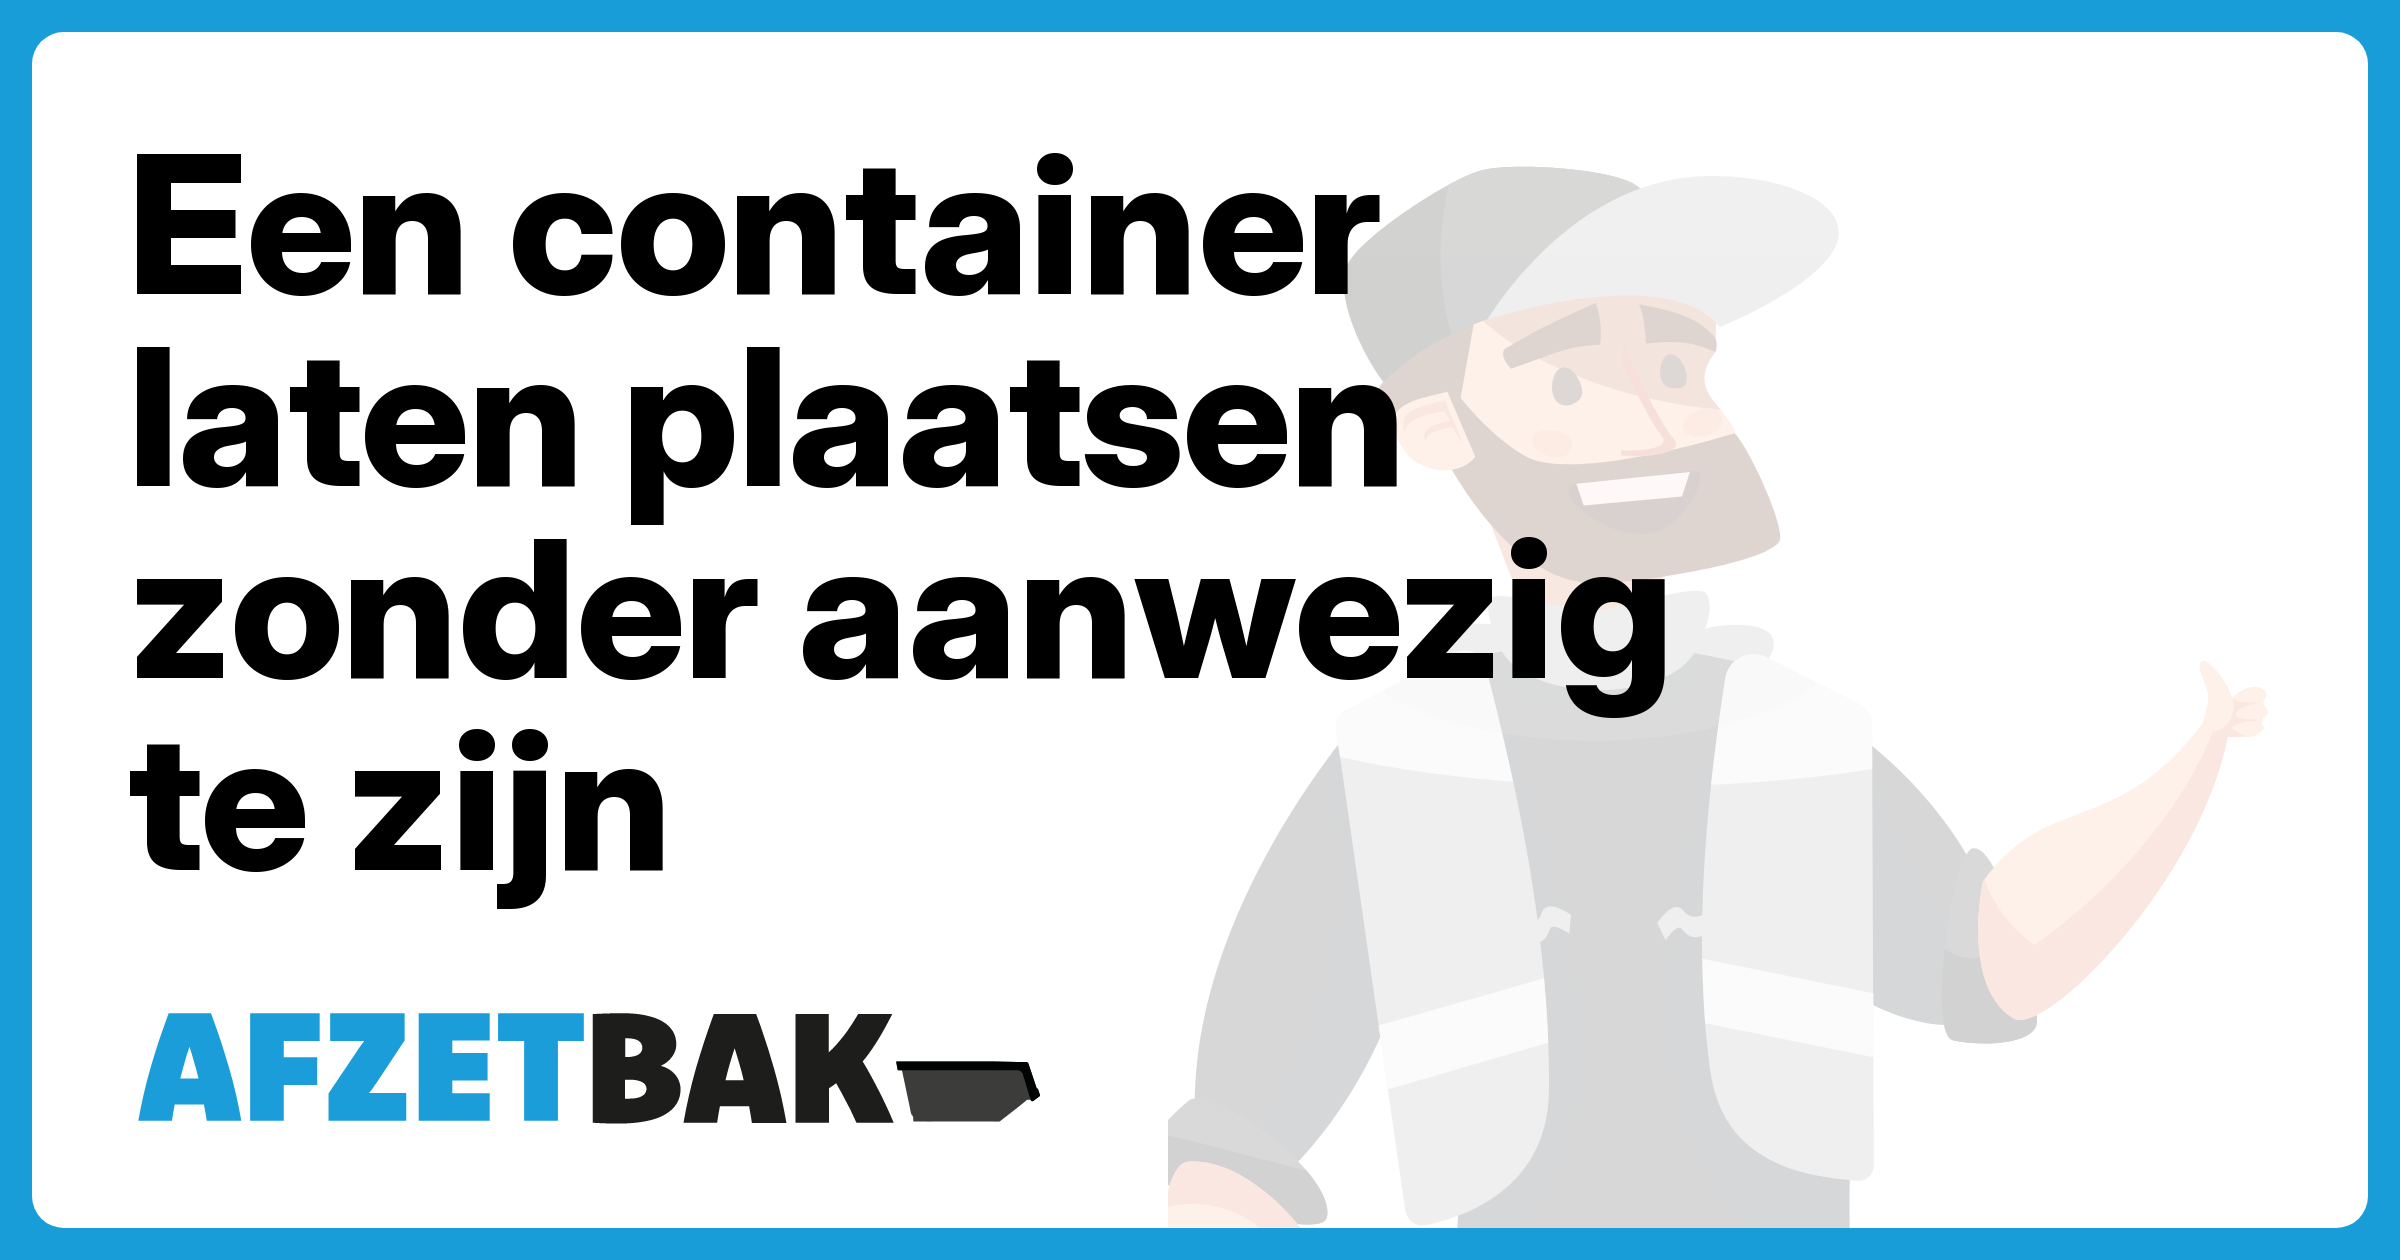 Een container laten plaatsen zonder aanwezig te zijn - Afzetbak.nl